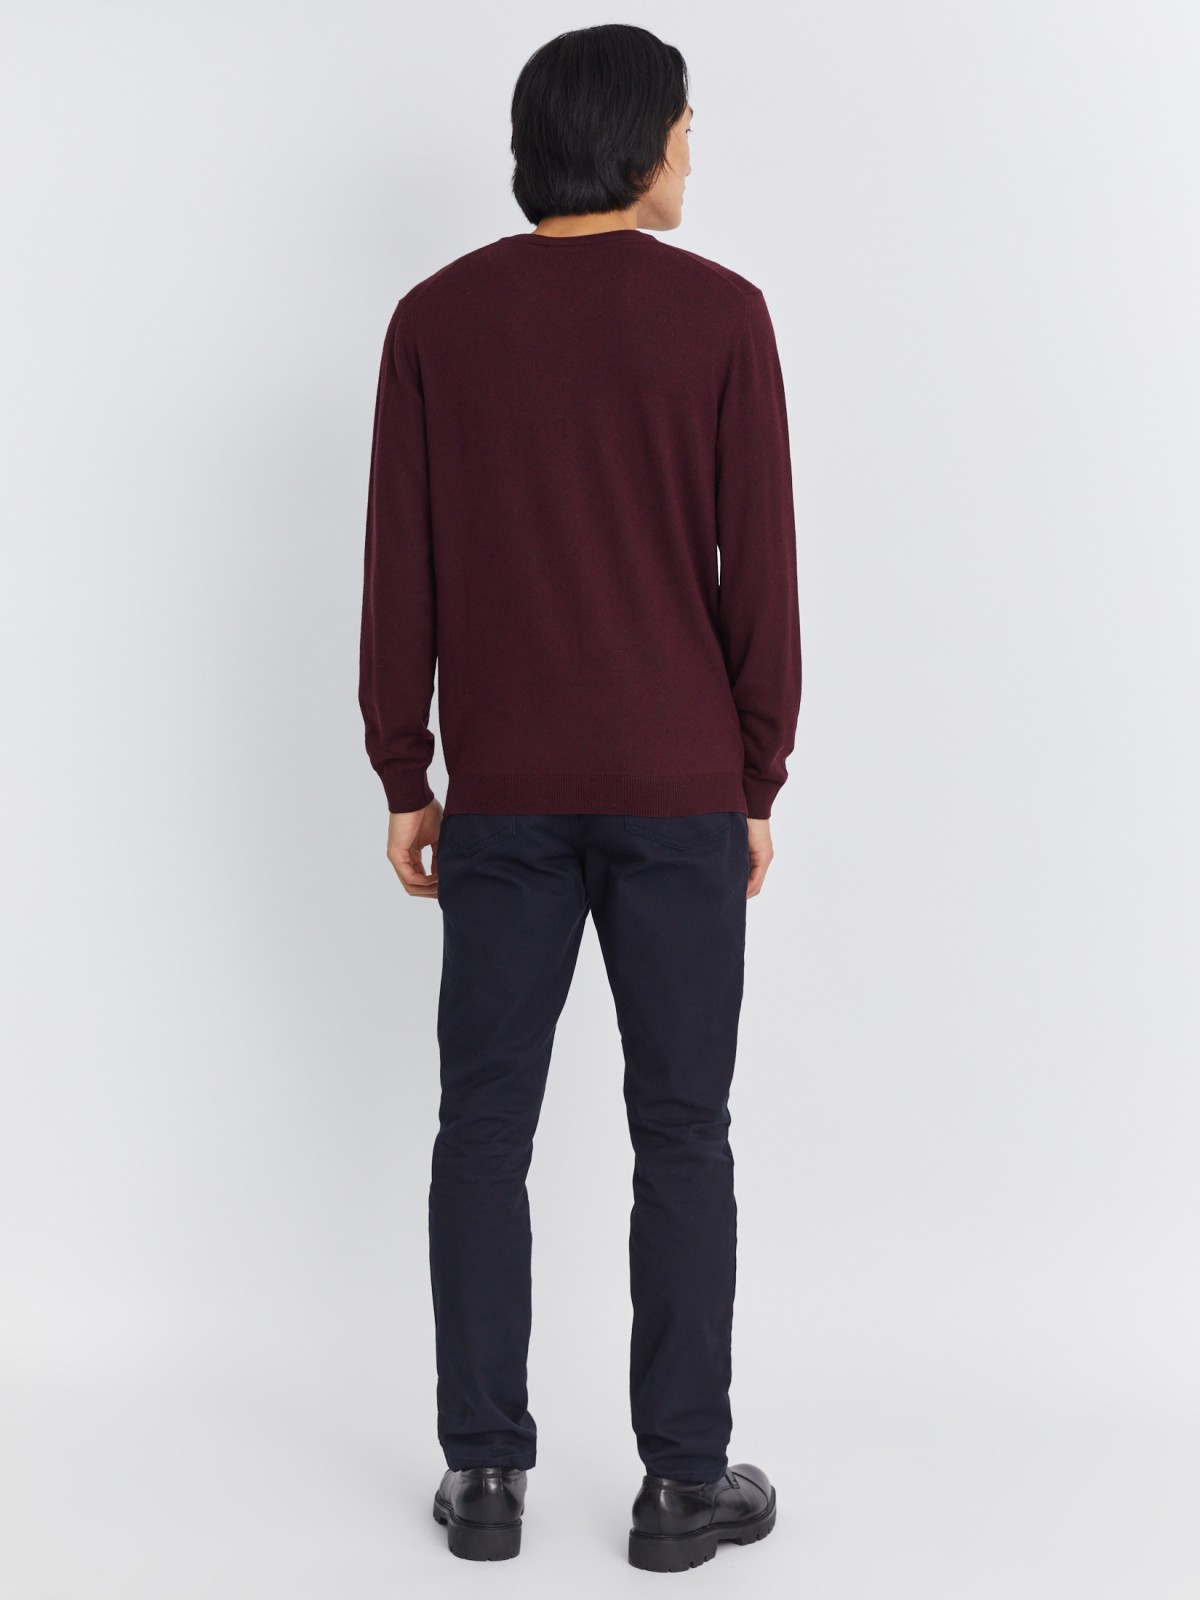 Шерстяной трикотажный пуловер с треугольным вырезом и длинным рукавом zolla 013346163042, цвет бордо, размер M - фото 6